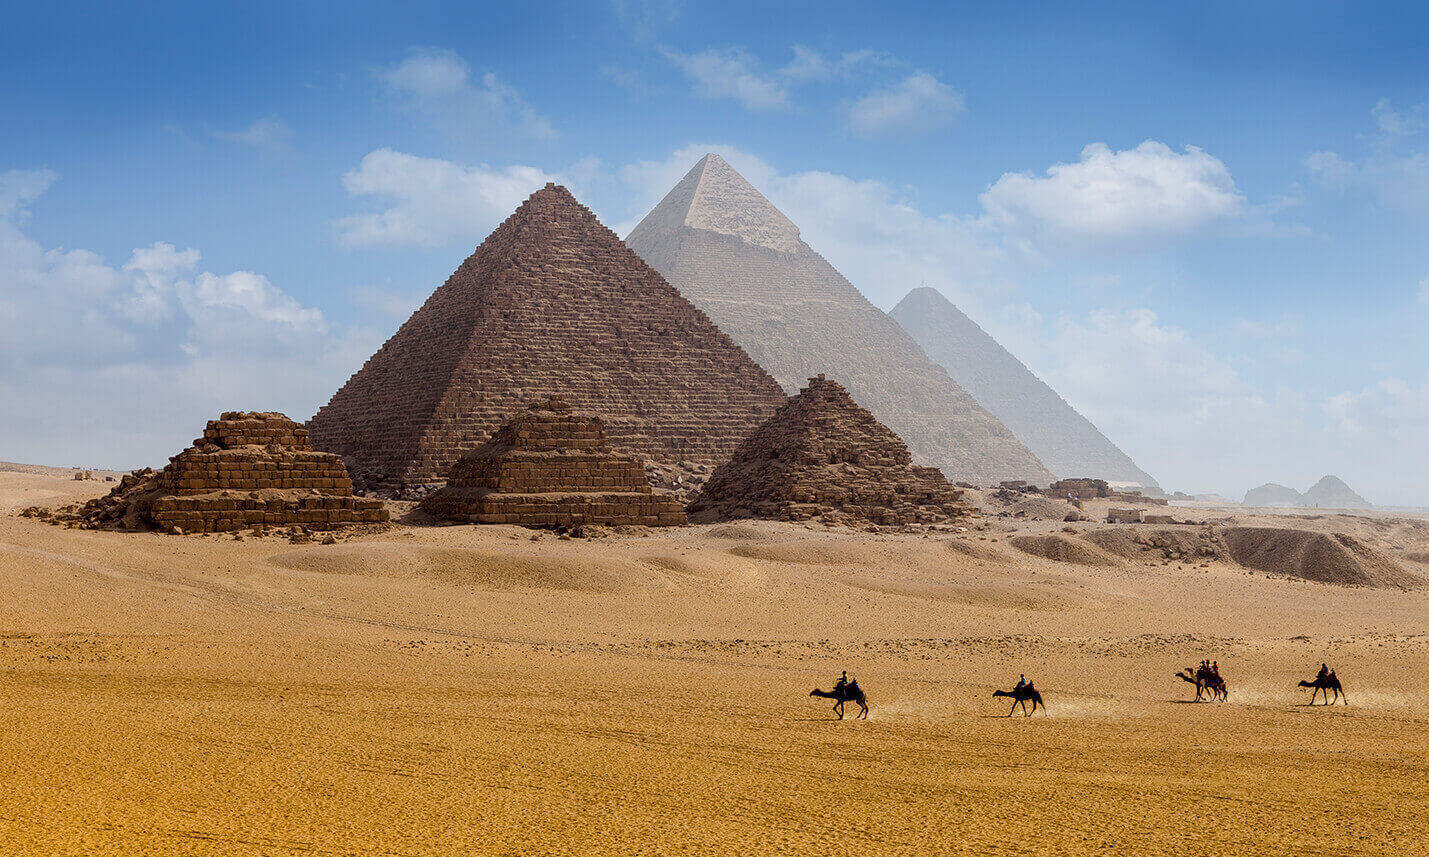 cheapest travel insurance for egypt